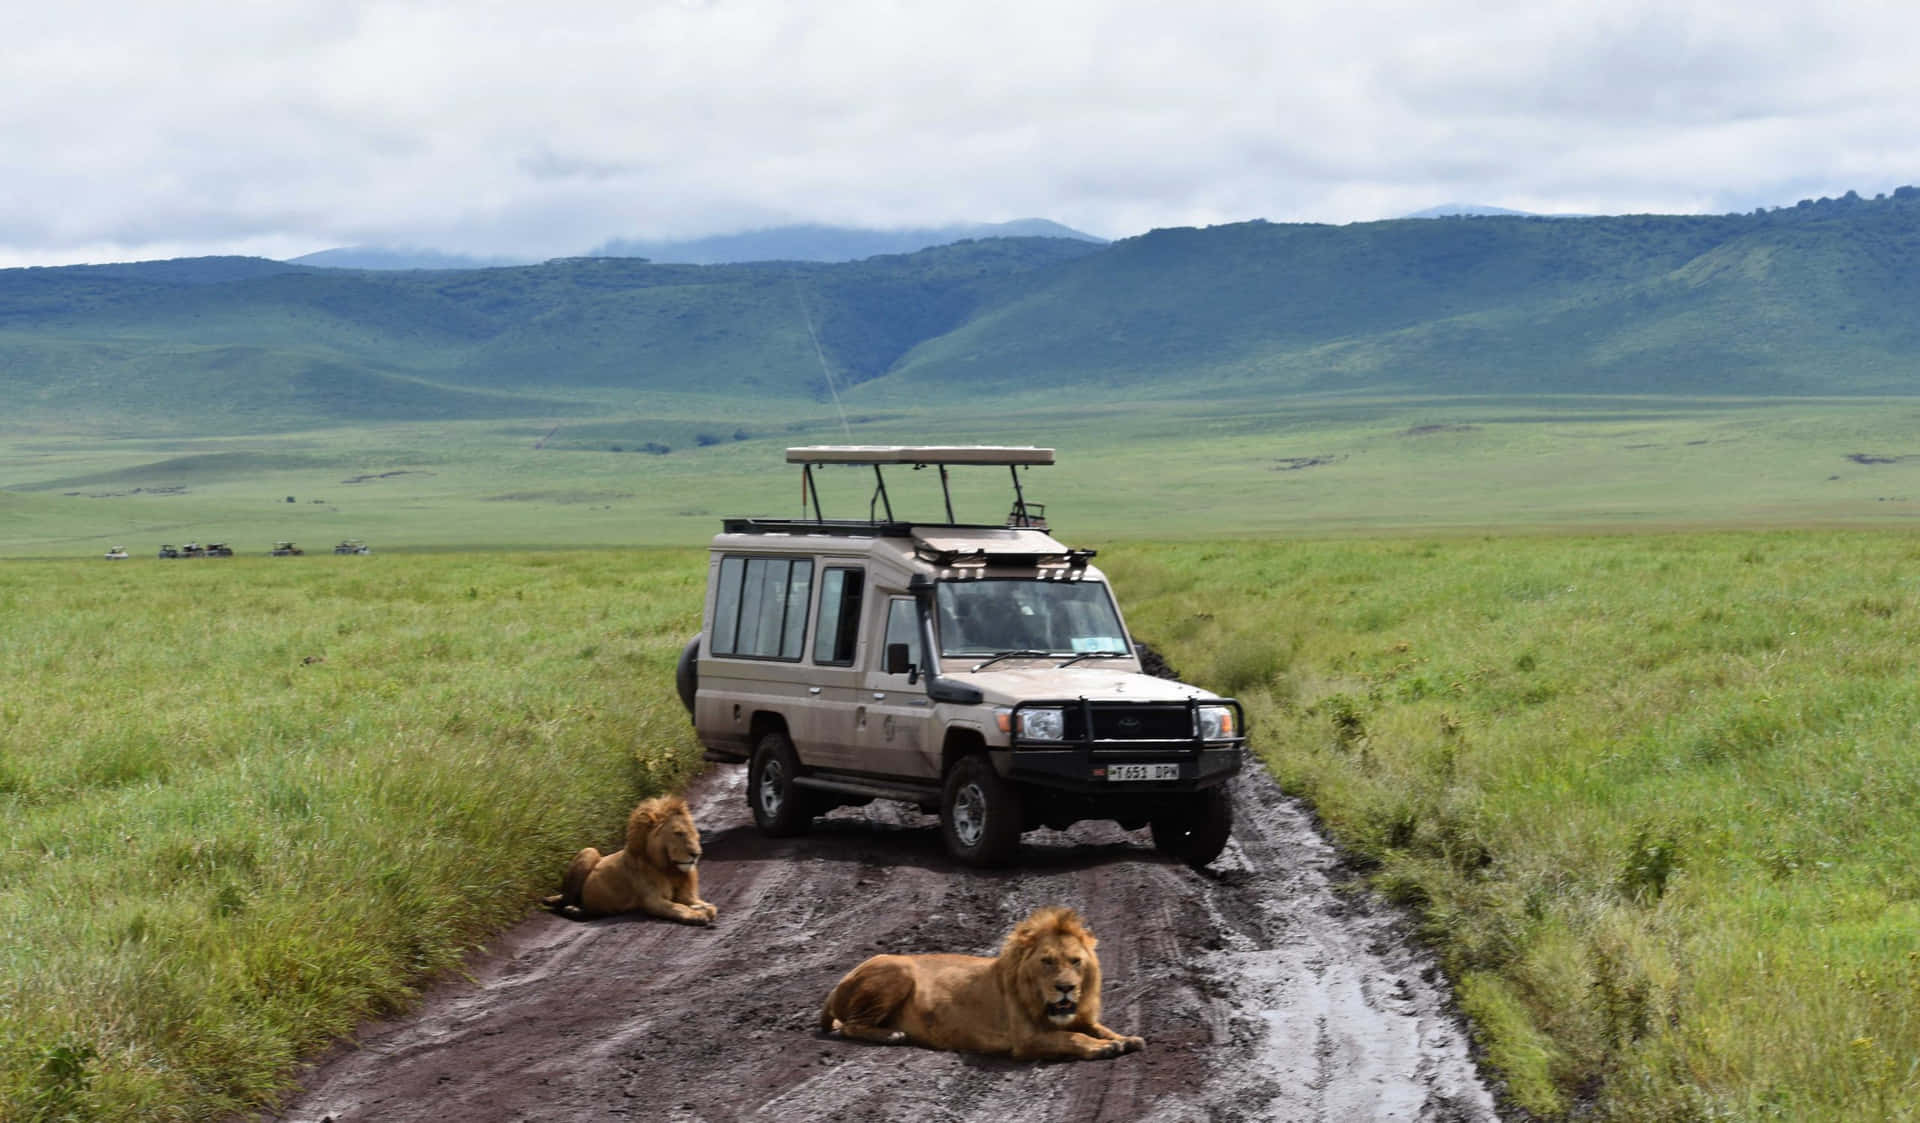 Lion And Safari Vehicle At The Tanzania Ngorongoro Crater Wallpaper